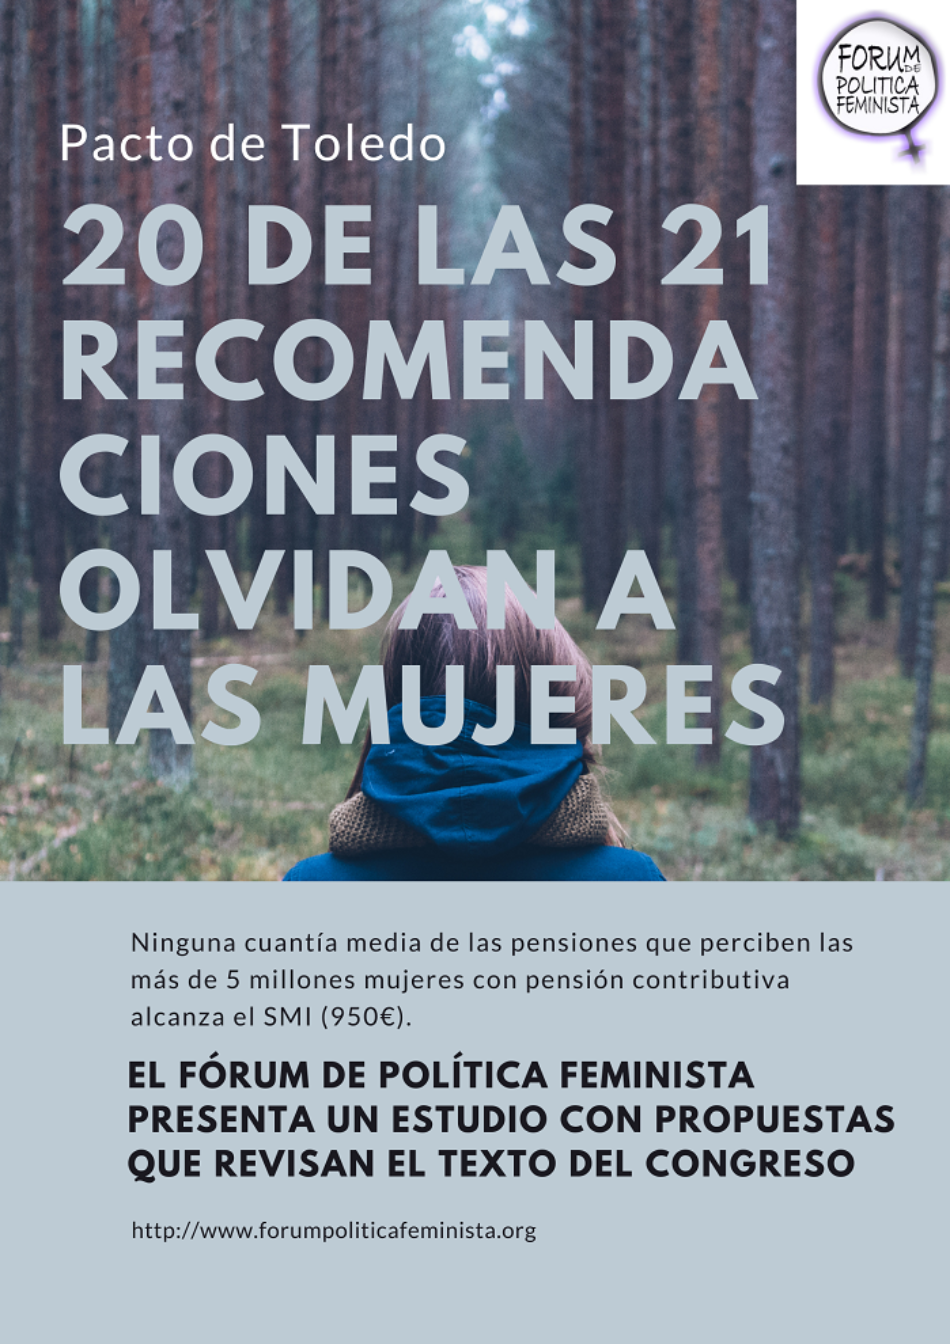 Fórum de Política Feminista (FPF): «20 de las 21 recomendaciones del Pacto de Toledo se olvidan de las mujeres»